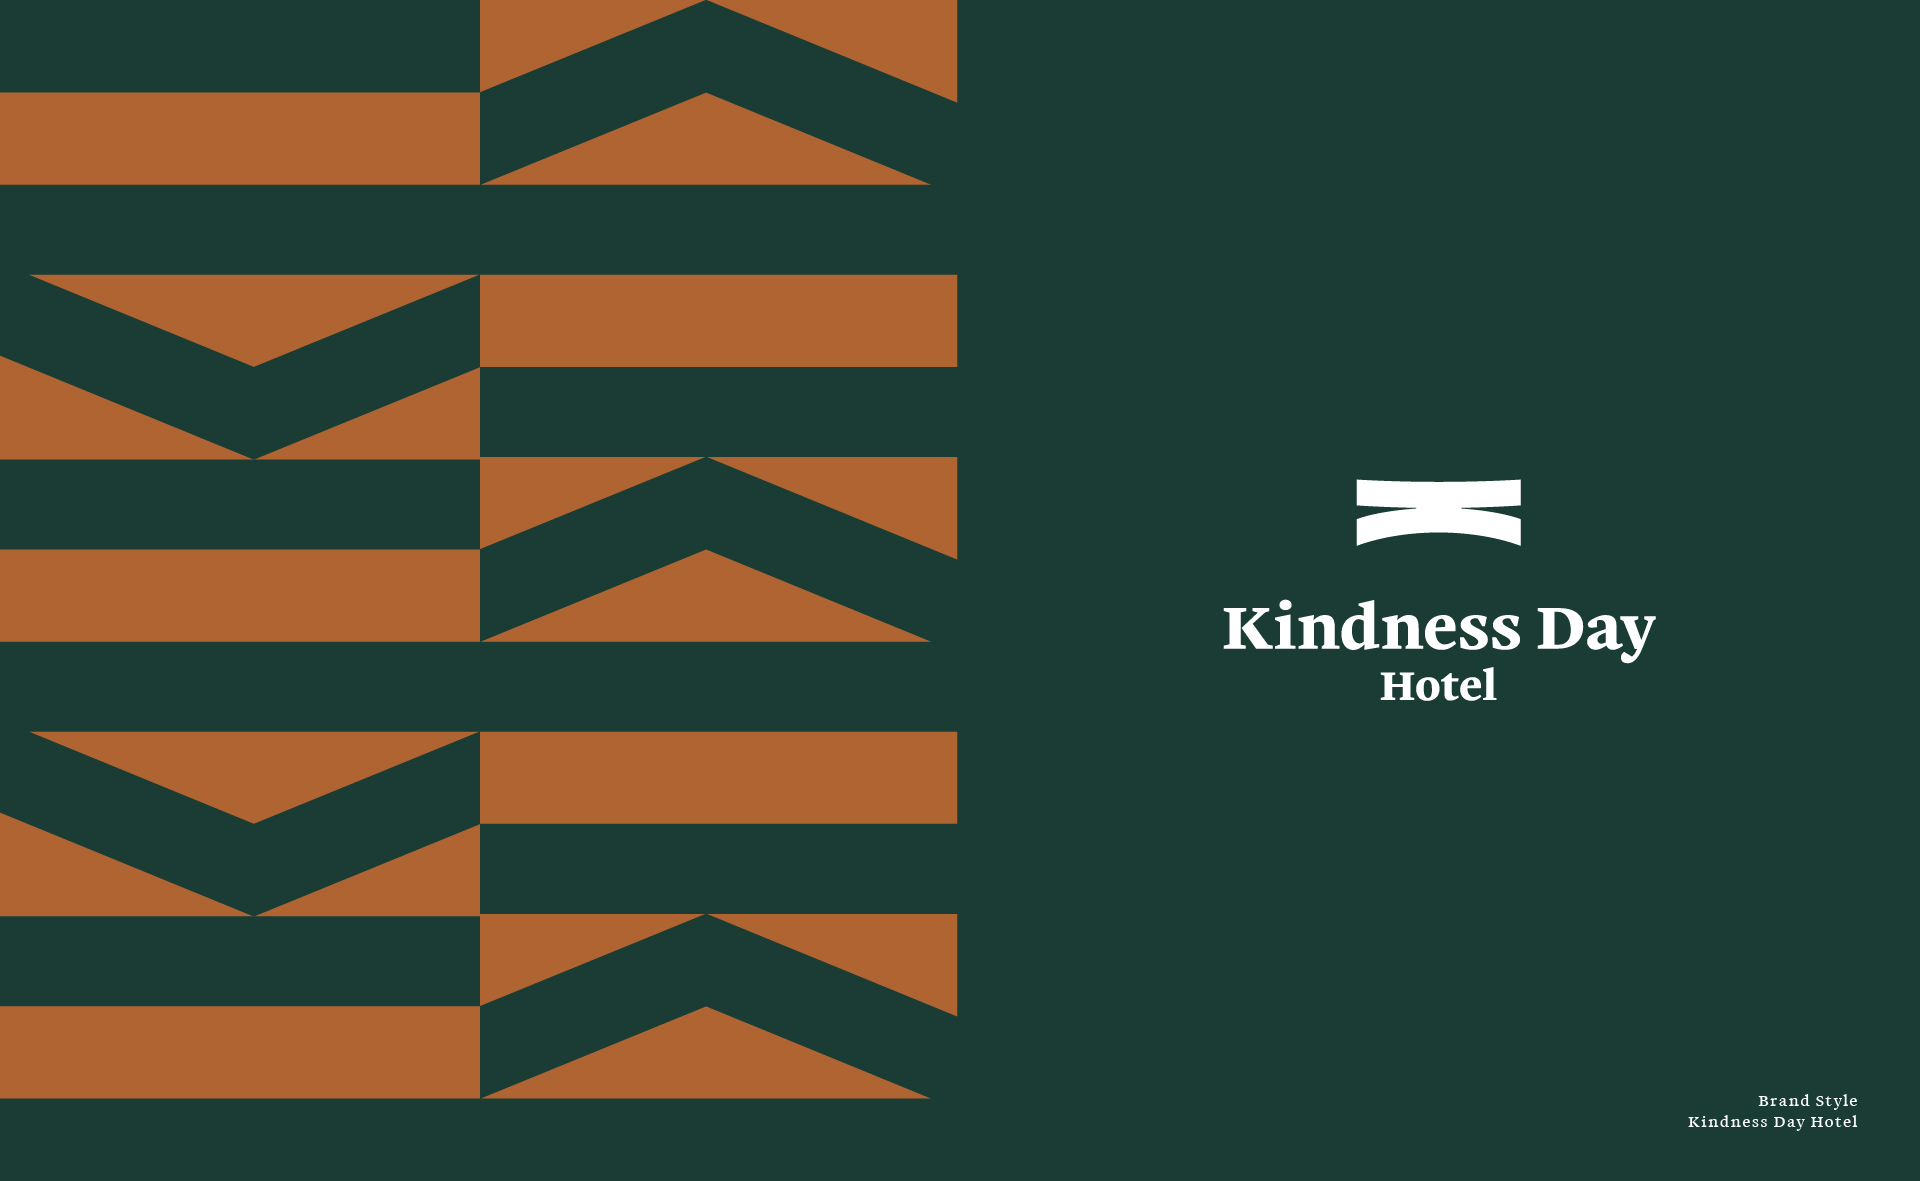 Kindness Hotel康桥慢旅酒店品牌形象设计